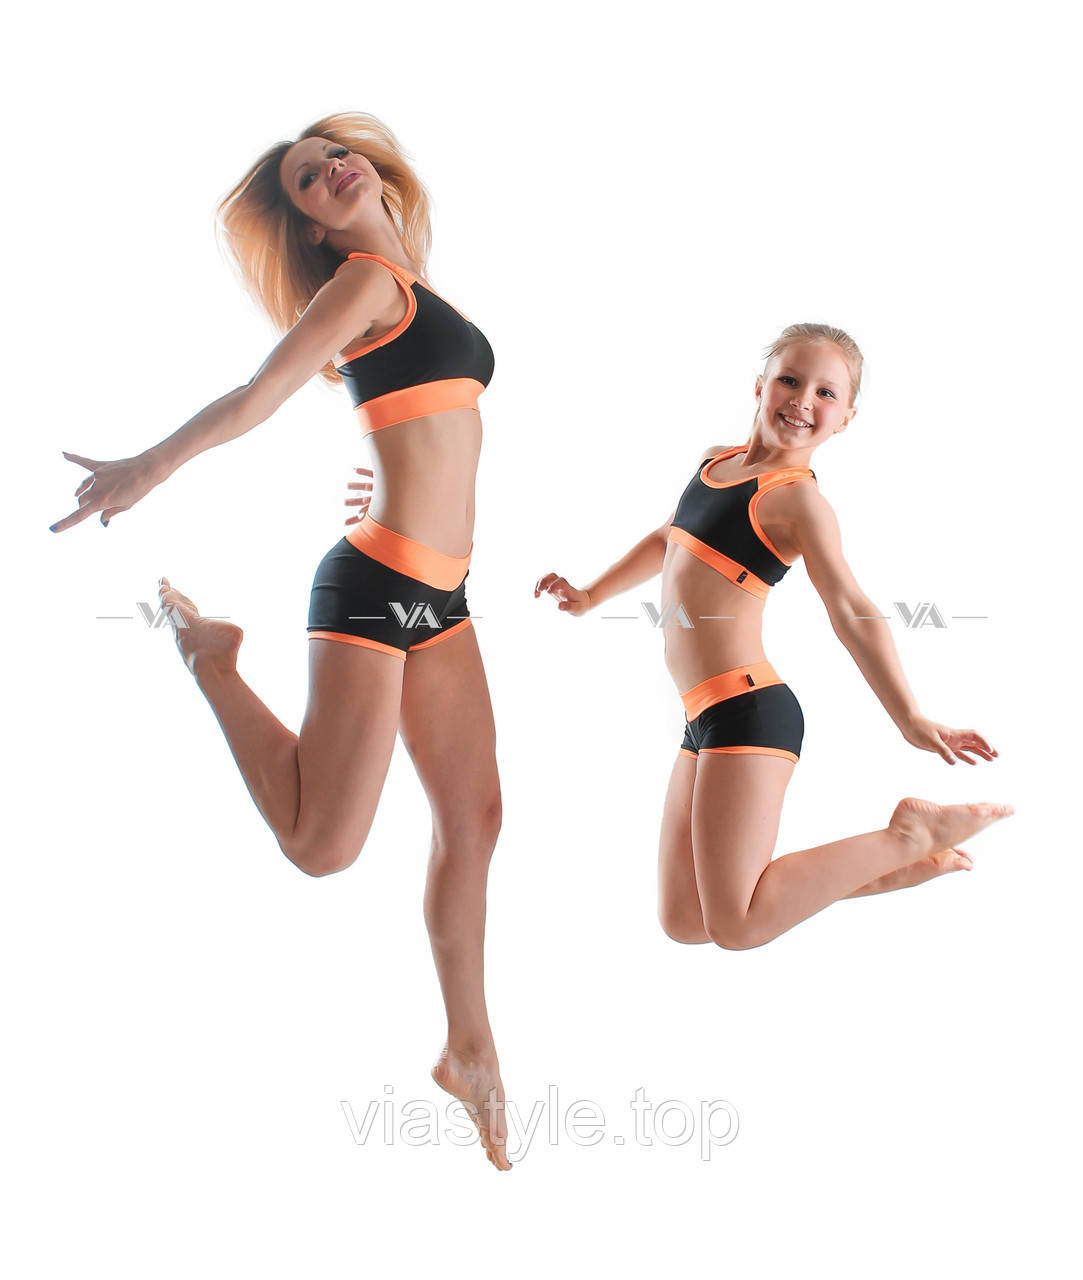 Топ и шорты VIA Sport мама и дочь для занятий pole dance и фитнесом